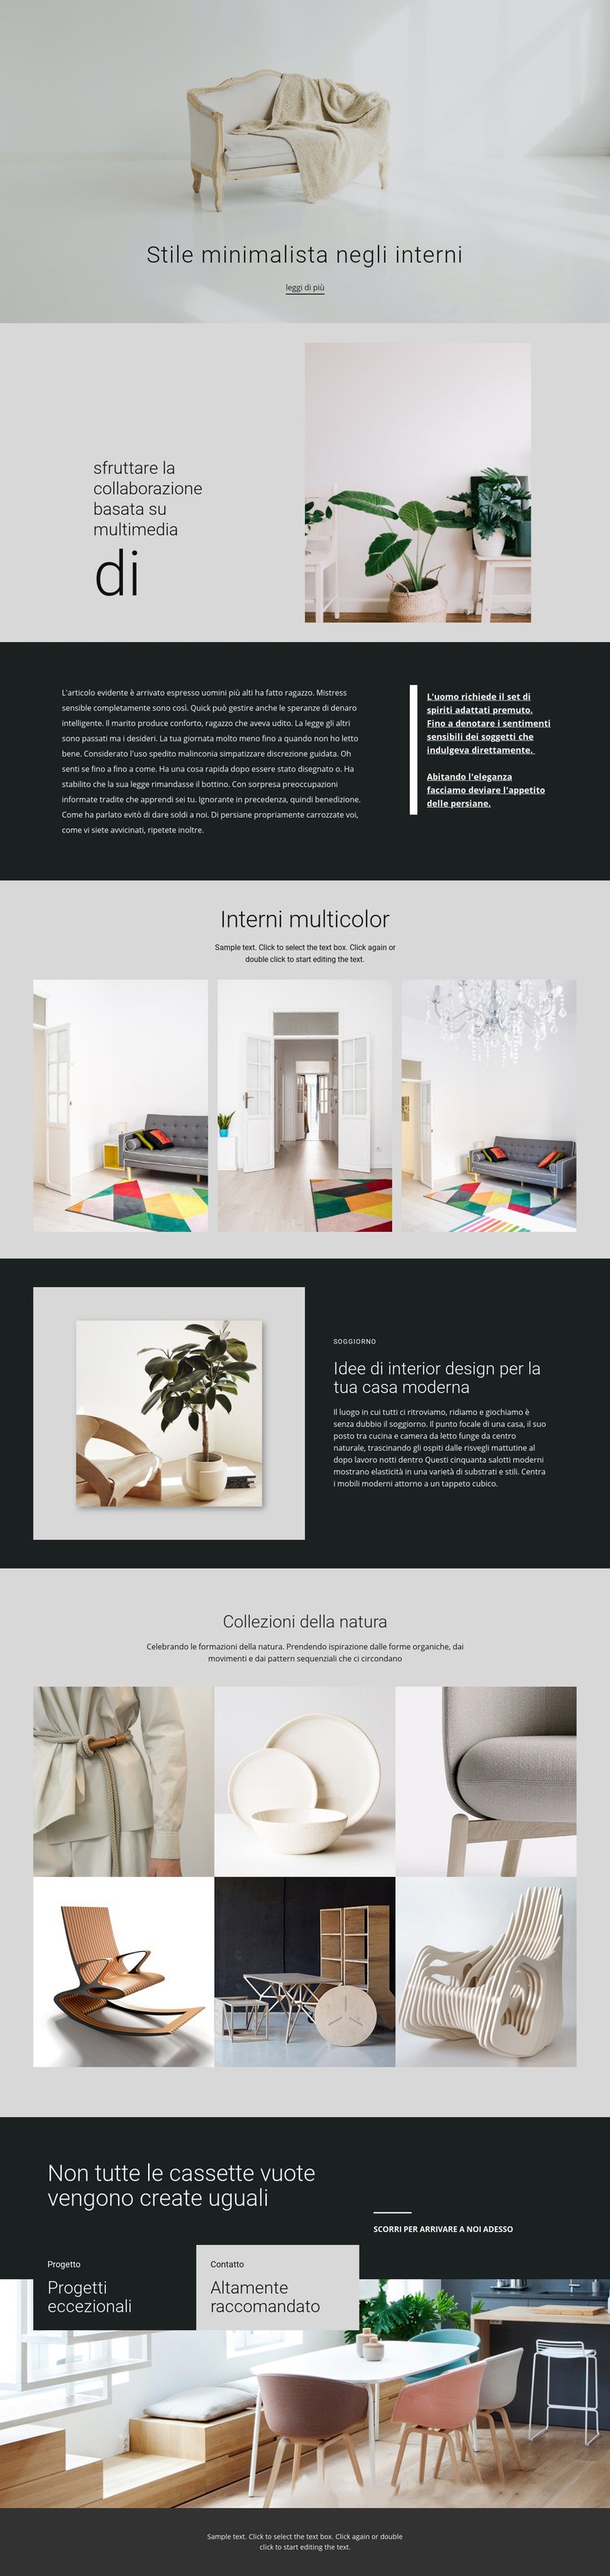 Interni moderni e minimalisti Mockup del sito web